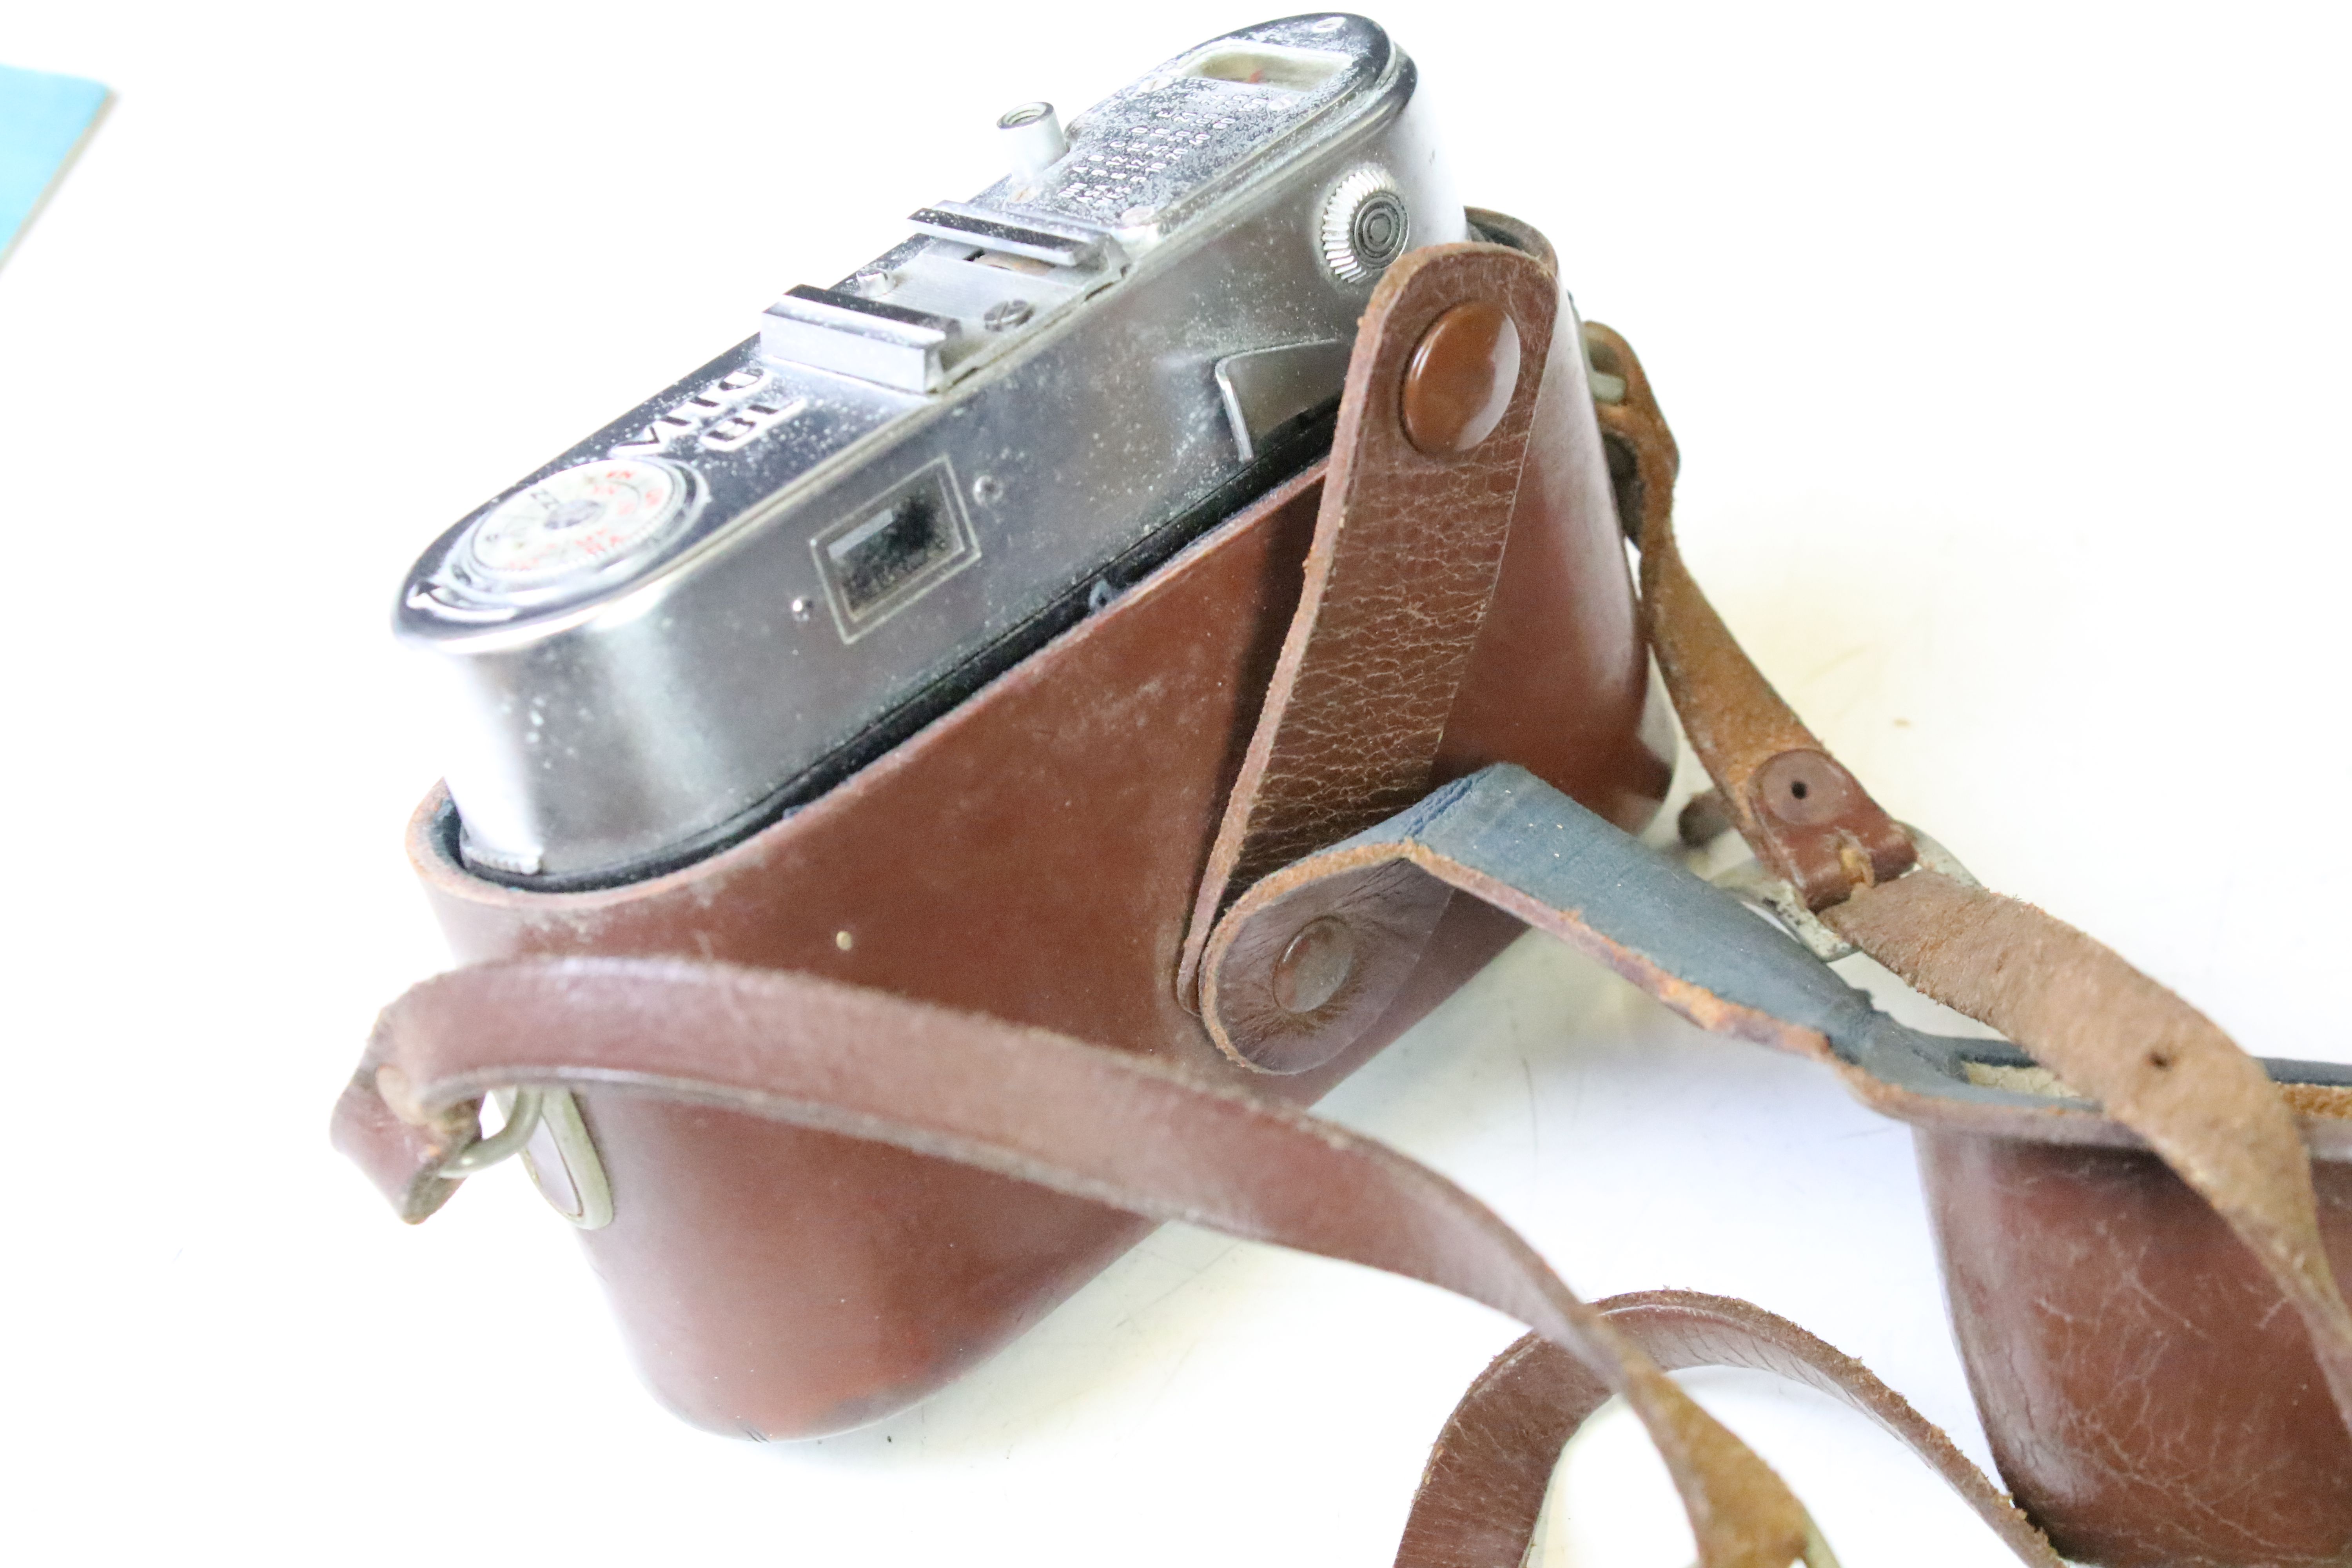 Voigtlander Vito BL 35mm film camera, leather cased, with Voigtlander Color-Skopar f/3.5 50mm - Image 2 of 4